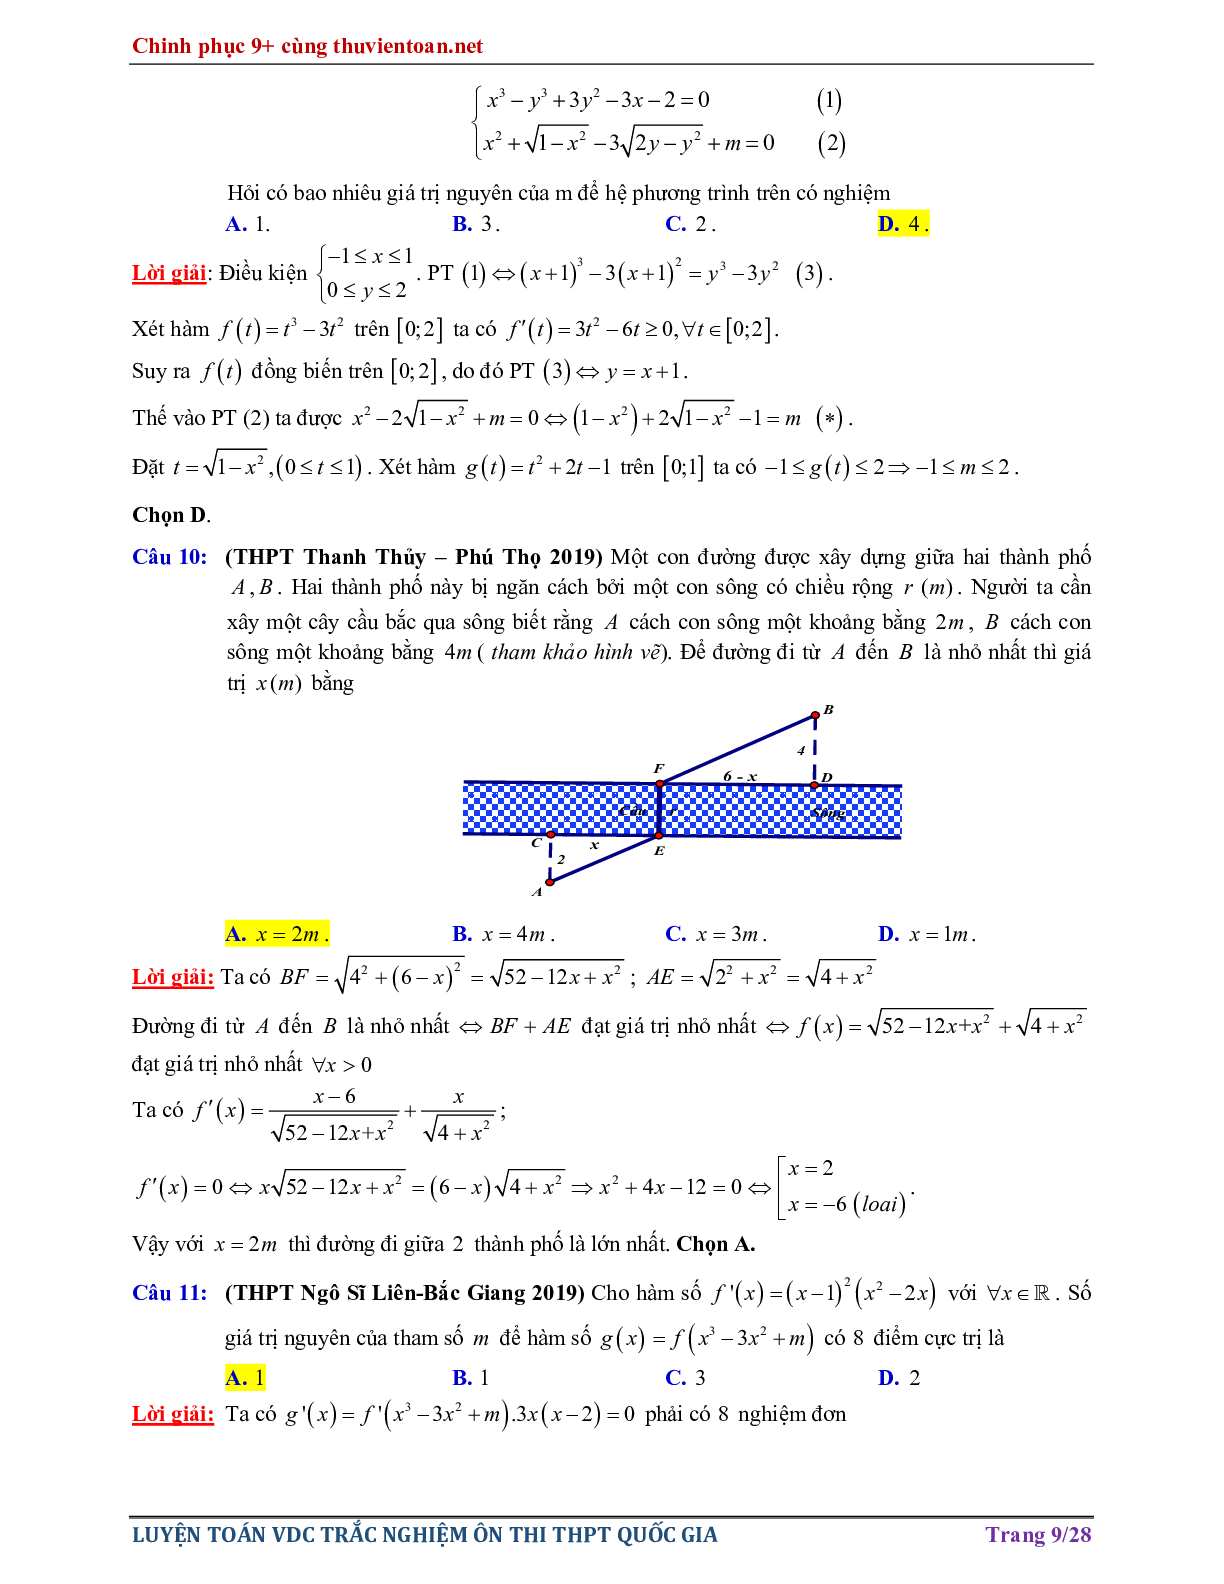 Bài tập Vận dụng cao - Nghiệm của phương trình hàm hợp ôn thi THPTQG năm 2021 (trang 9)